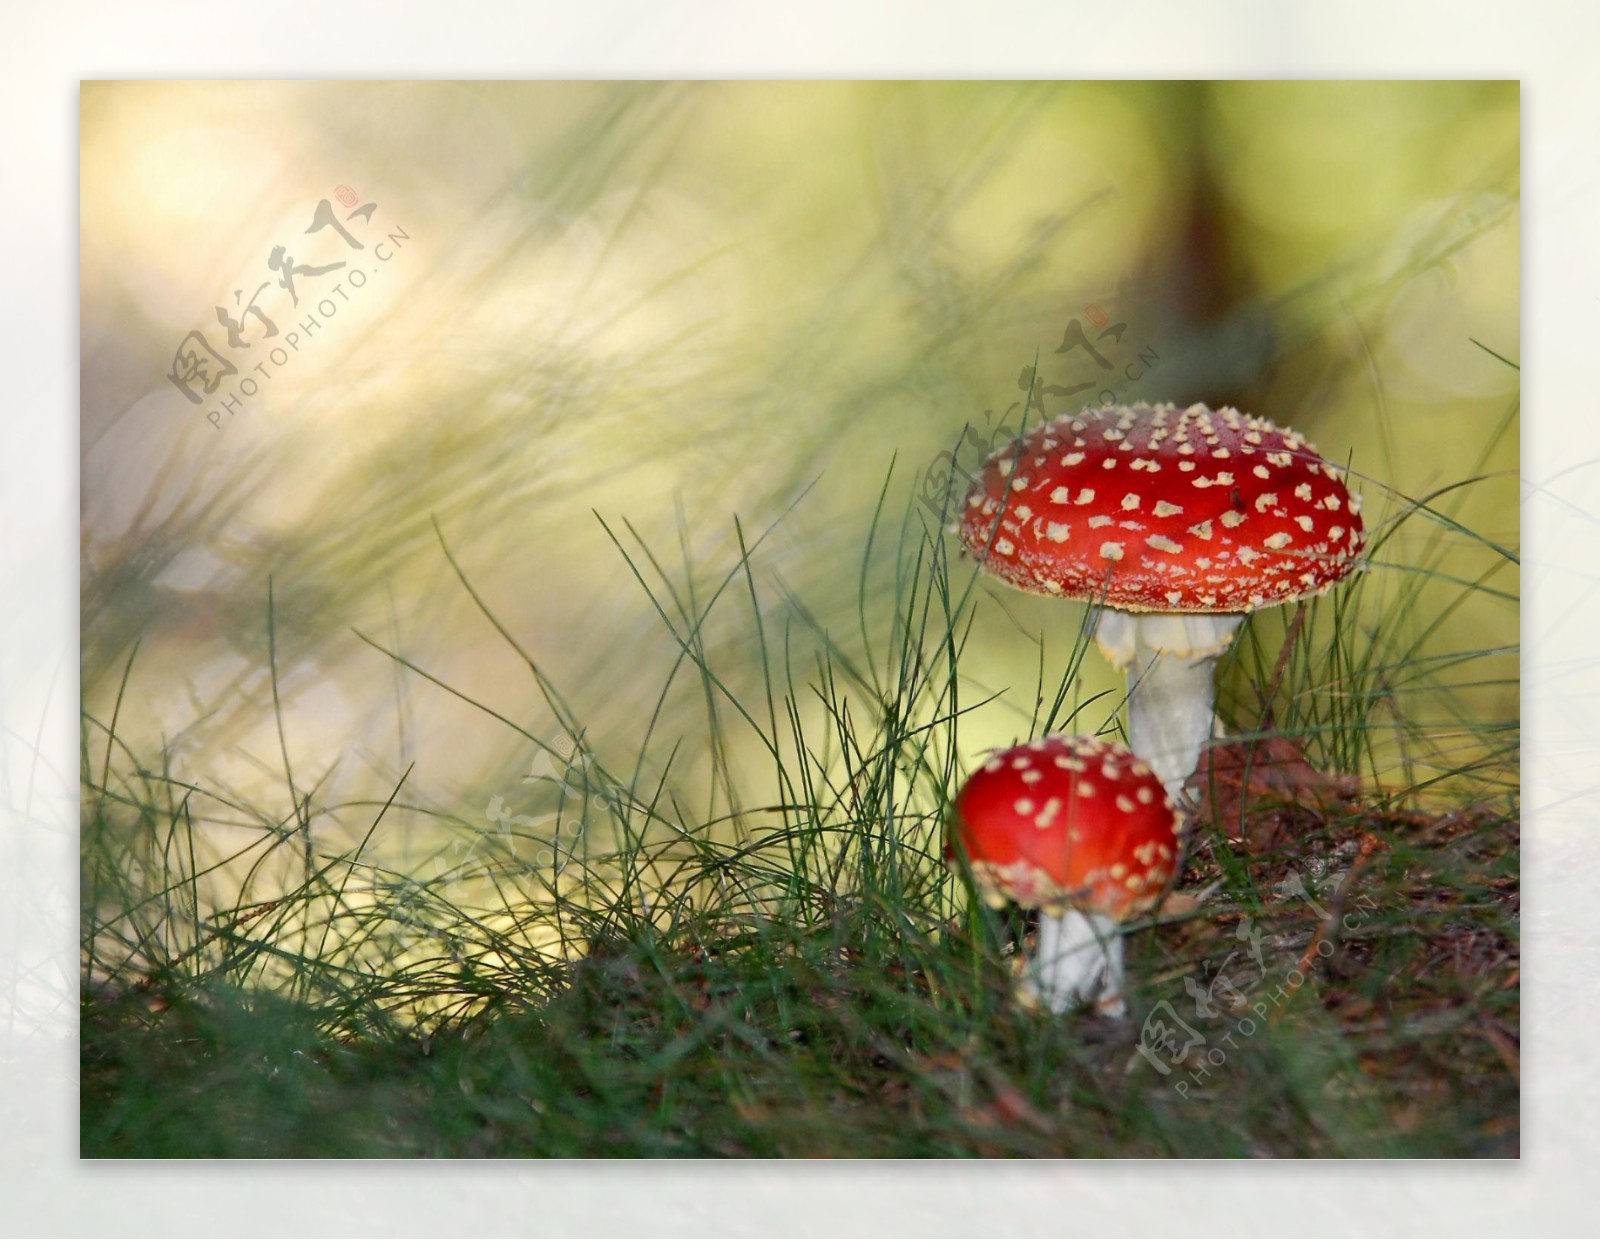 色彩艳丽的有毒蘑菇